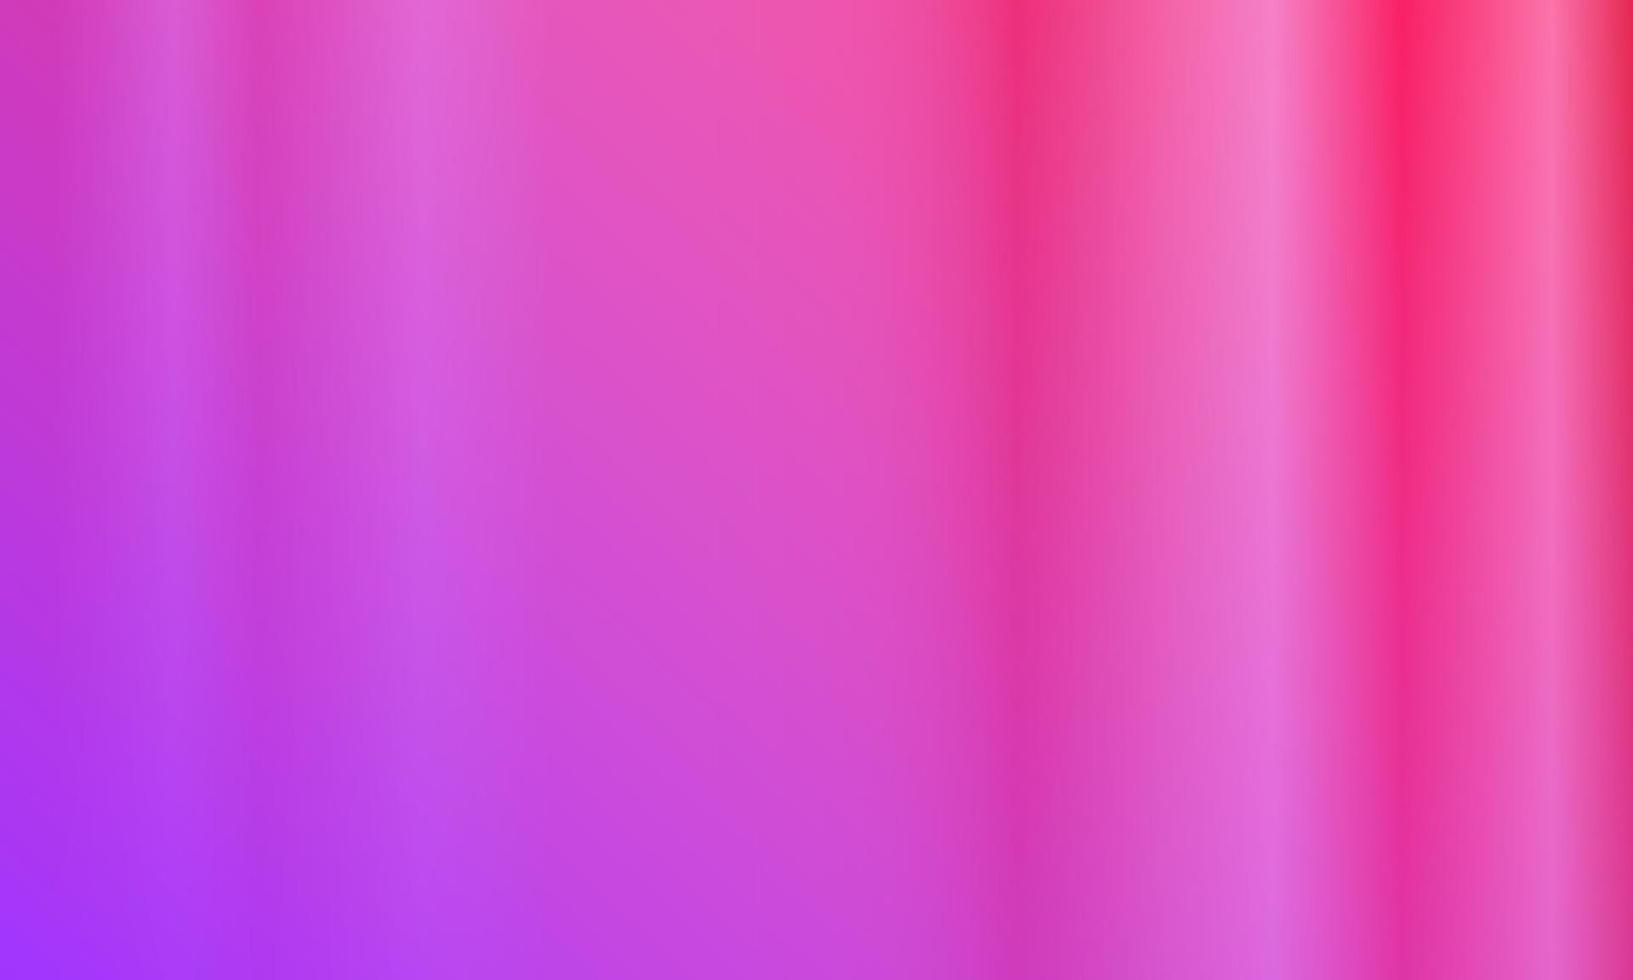 gradiente vertical púrpura y rojo brillante. estilo abstracto, moderno y colorido. excelente para fondo, papel tapiz, tarjeta, portada, afiche, pancarta o volante vector